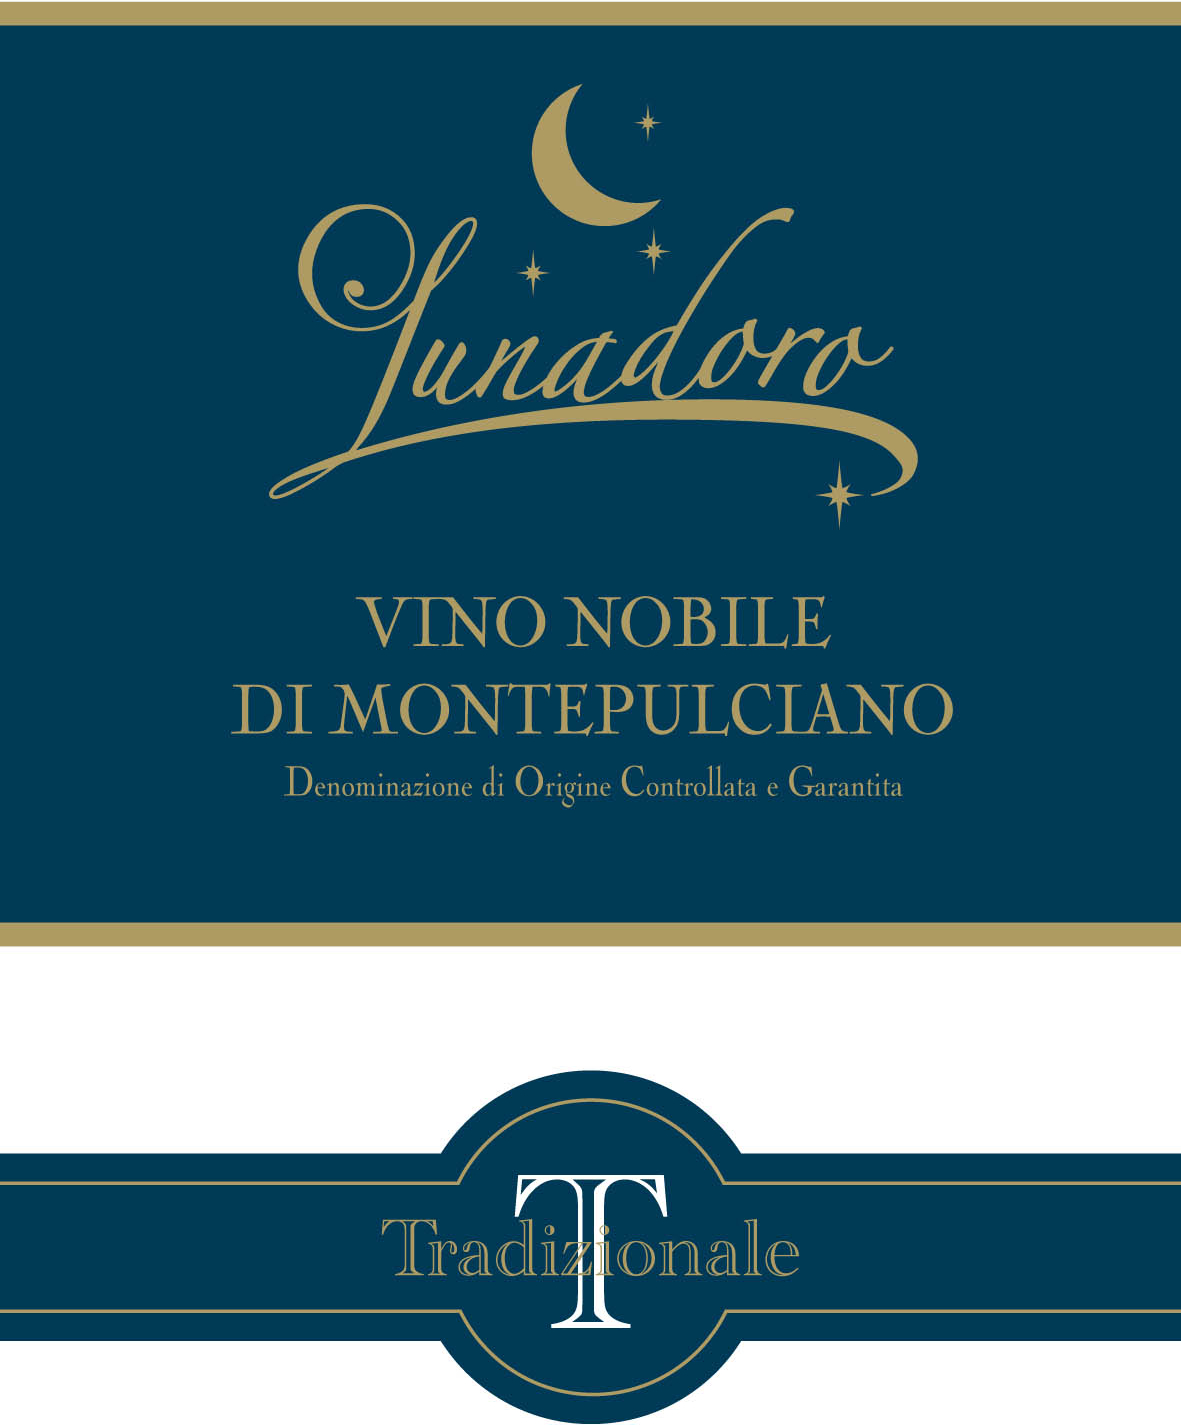 Lunadoro Tradizionale Vino Nobile di Montepulciano DOCG 2011